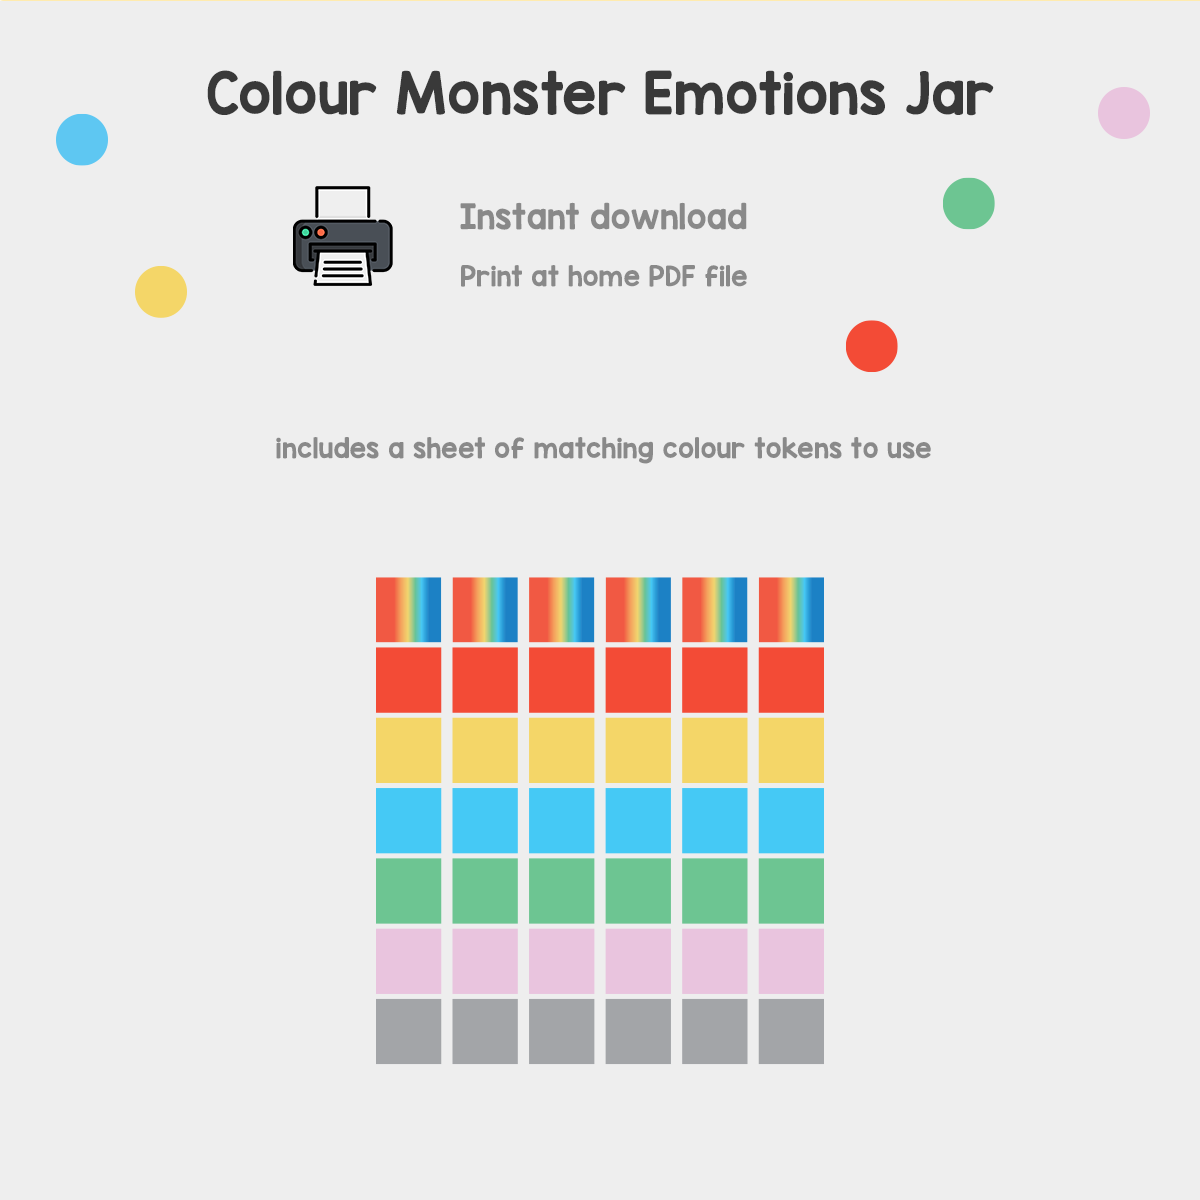 Colour Monster Emotions Jar